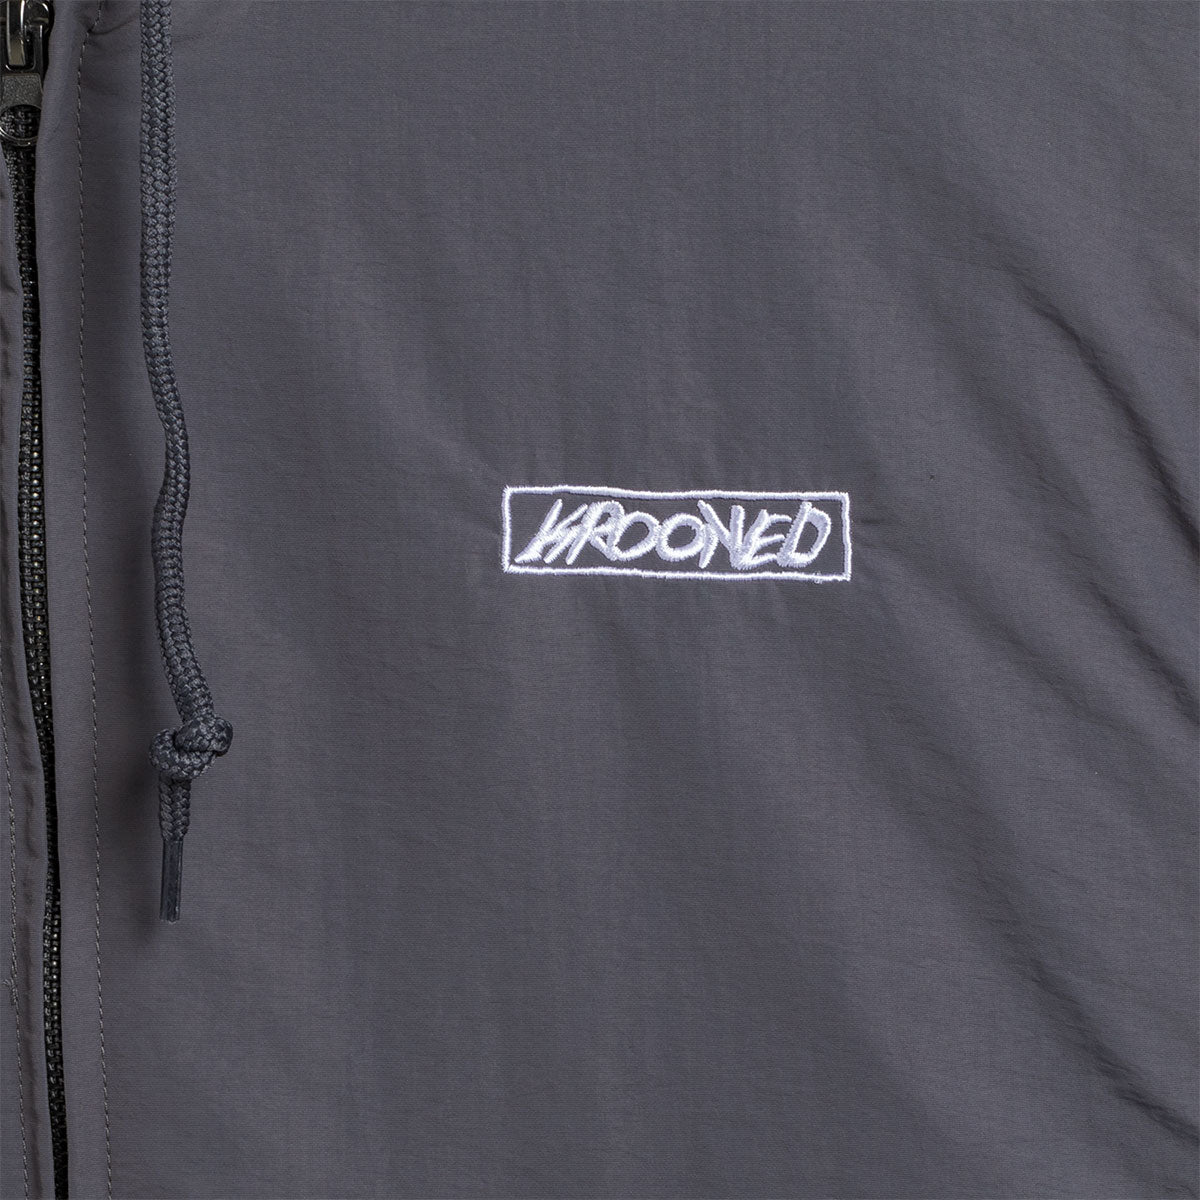 Krooked Mace II Jacket - Charcoal image 5